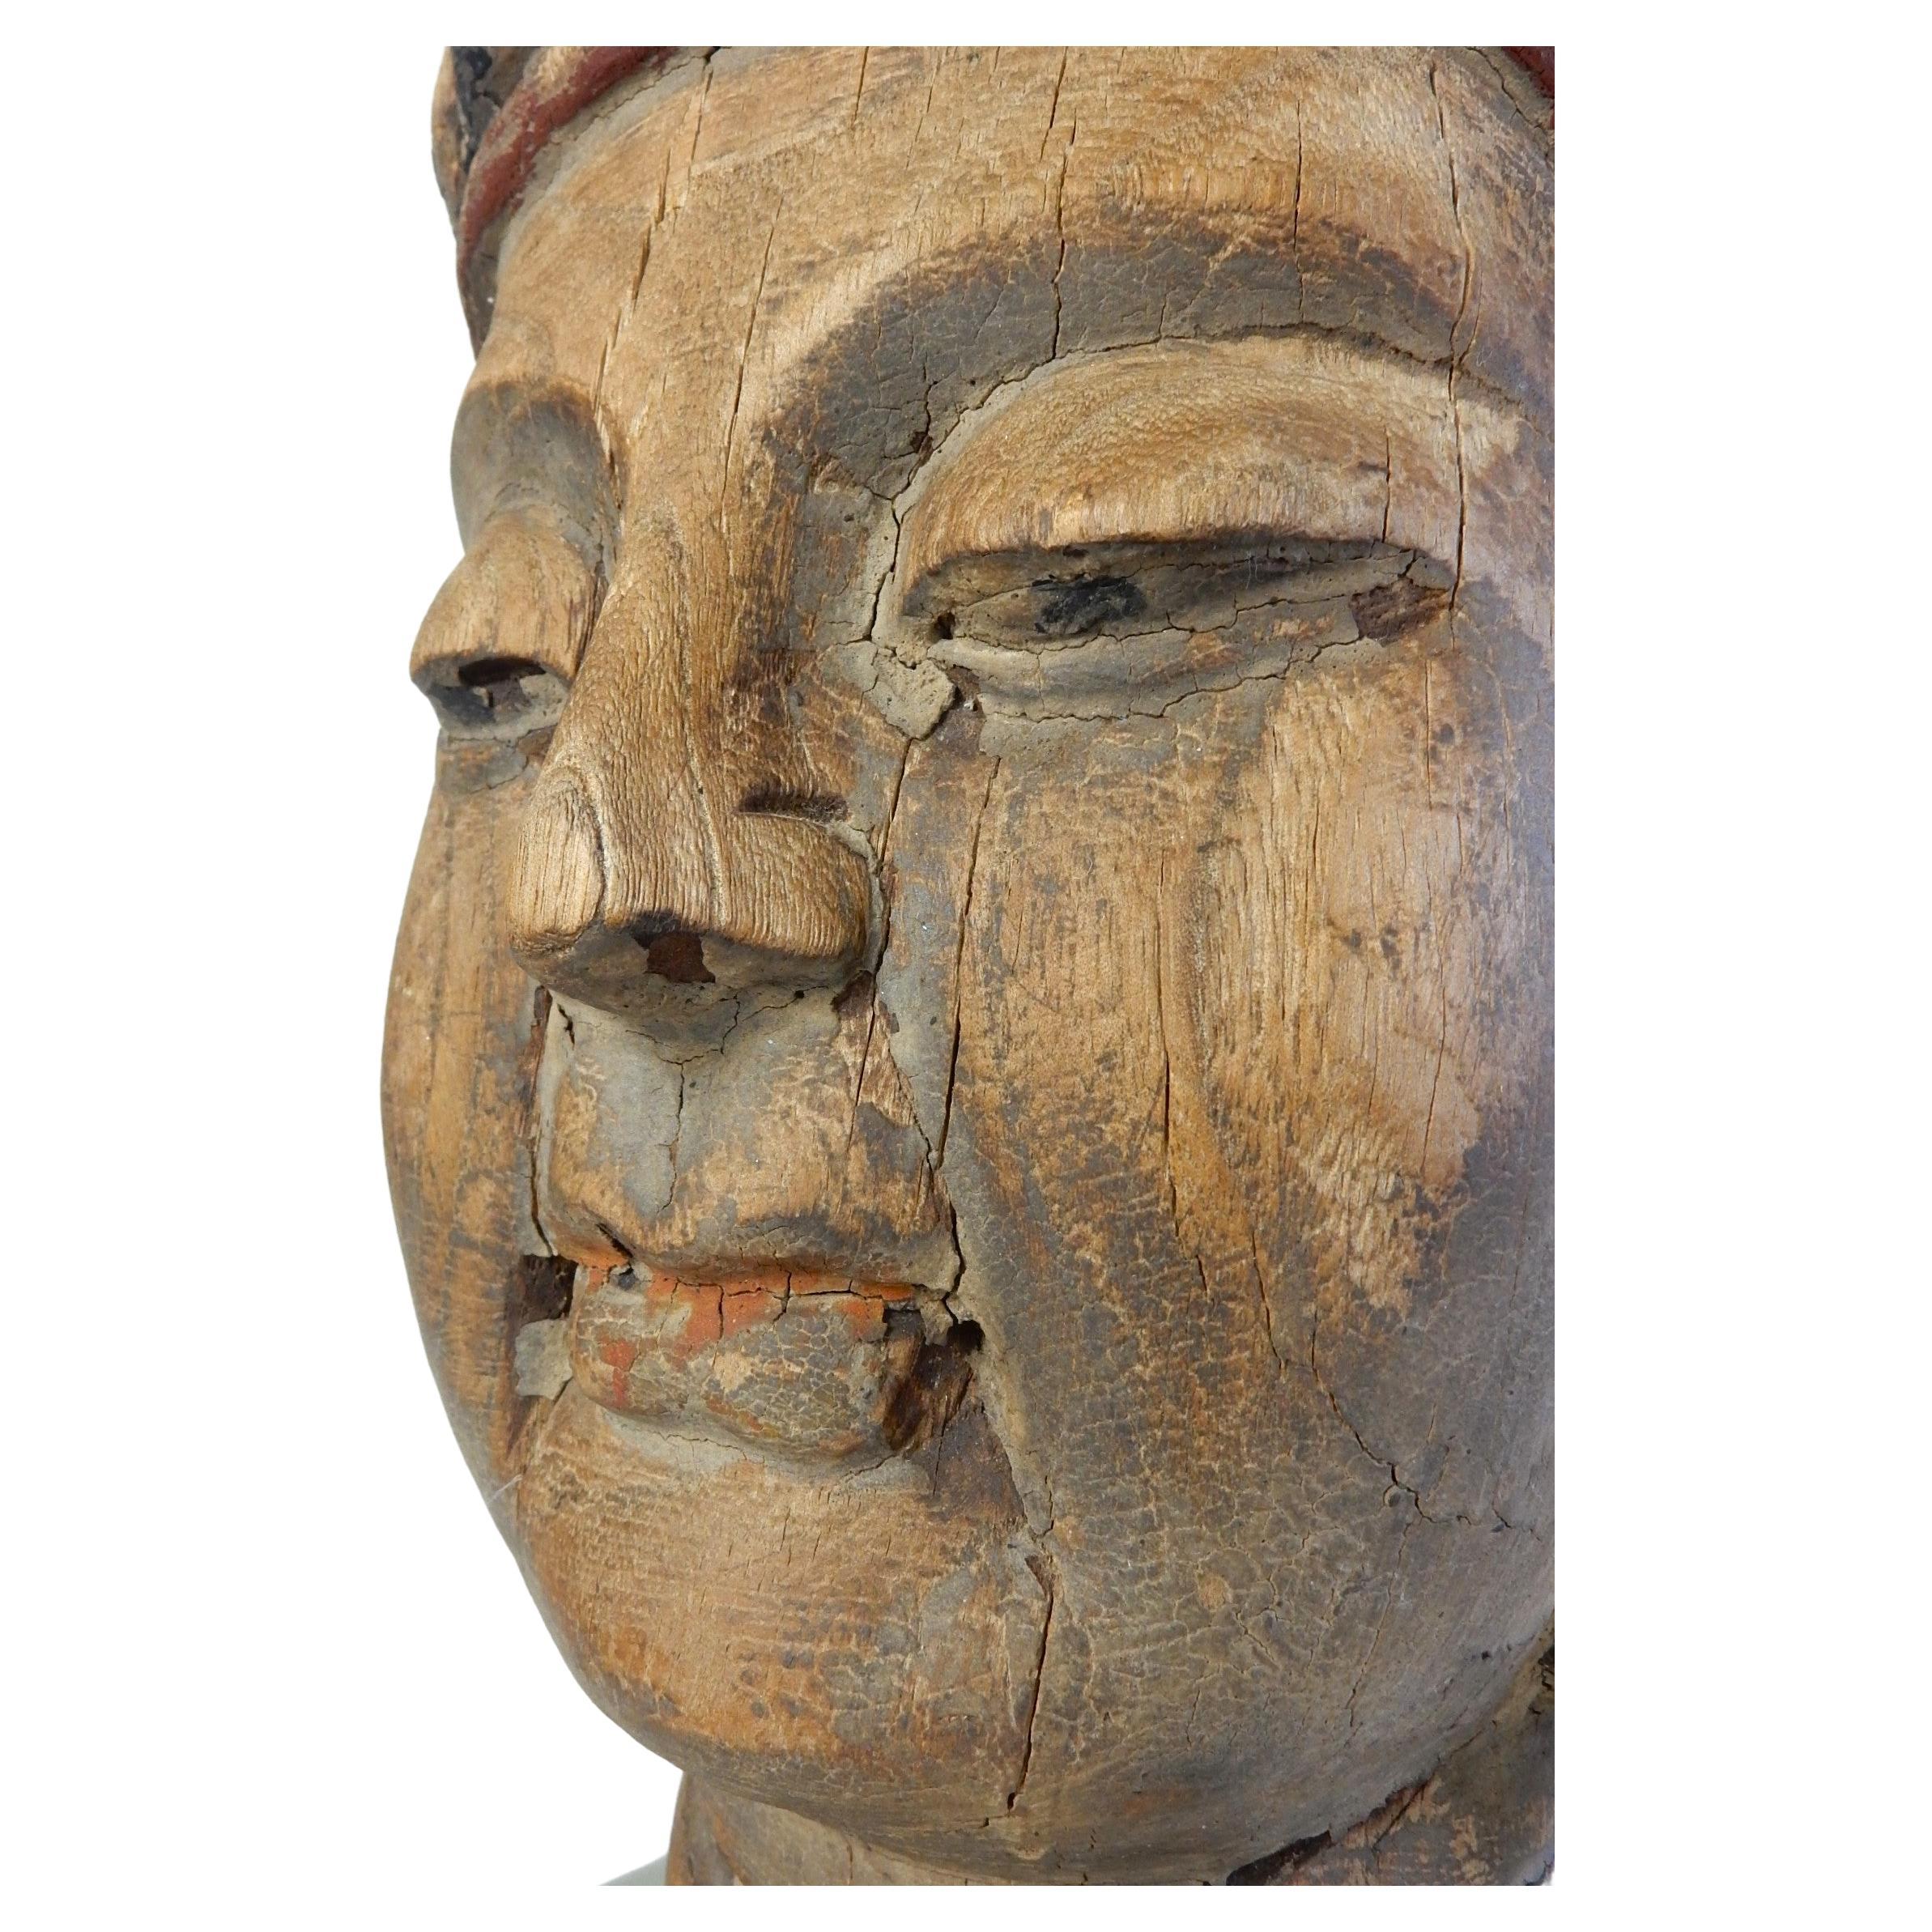 Exquise tête de Bouddha sculptée à la main.
Nous ne sommes pas des experts et nous devinons donc l'âge de cette pièce. Il pourrait être beaucoup plus ancien.
Merveilleuse pièce de décoration posée sur un socle en vieux verre de trottoir